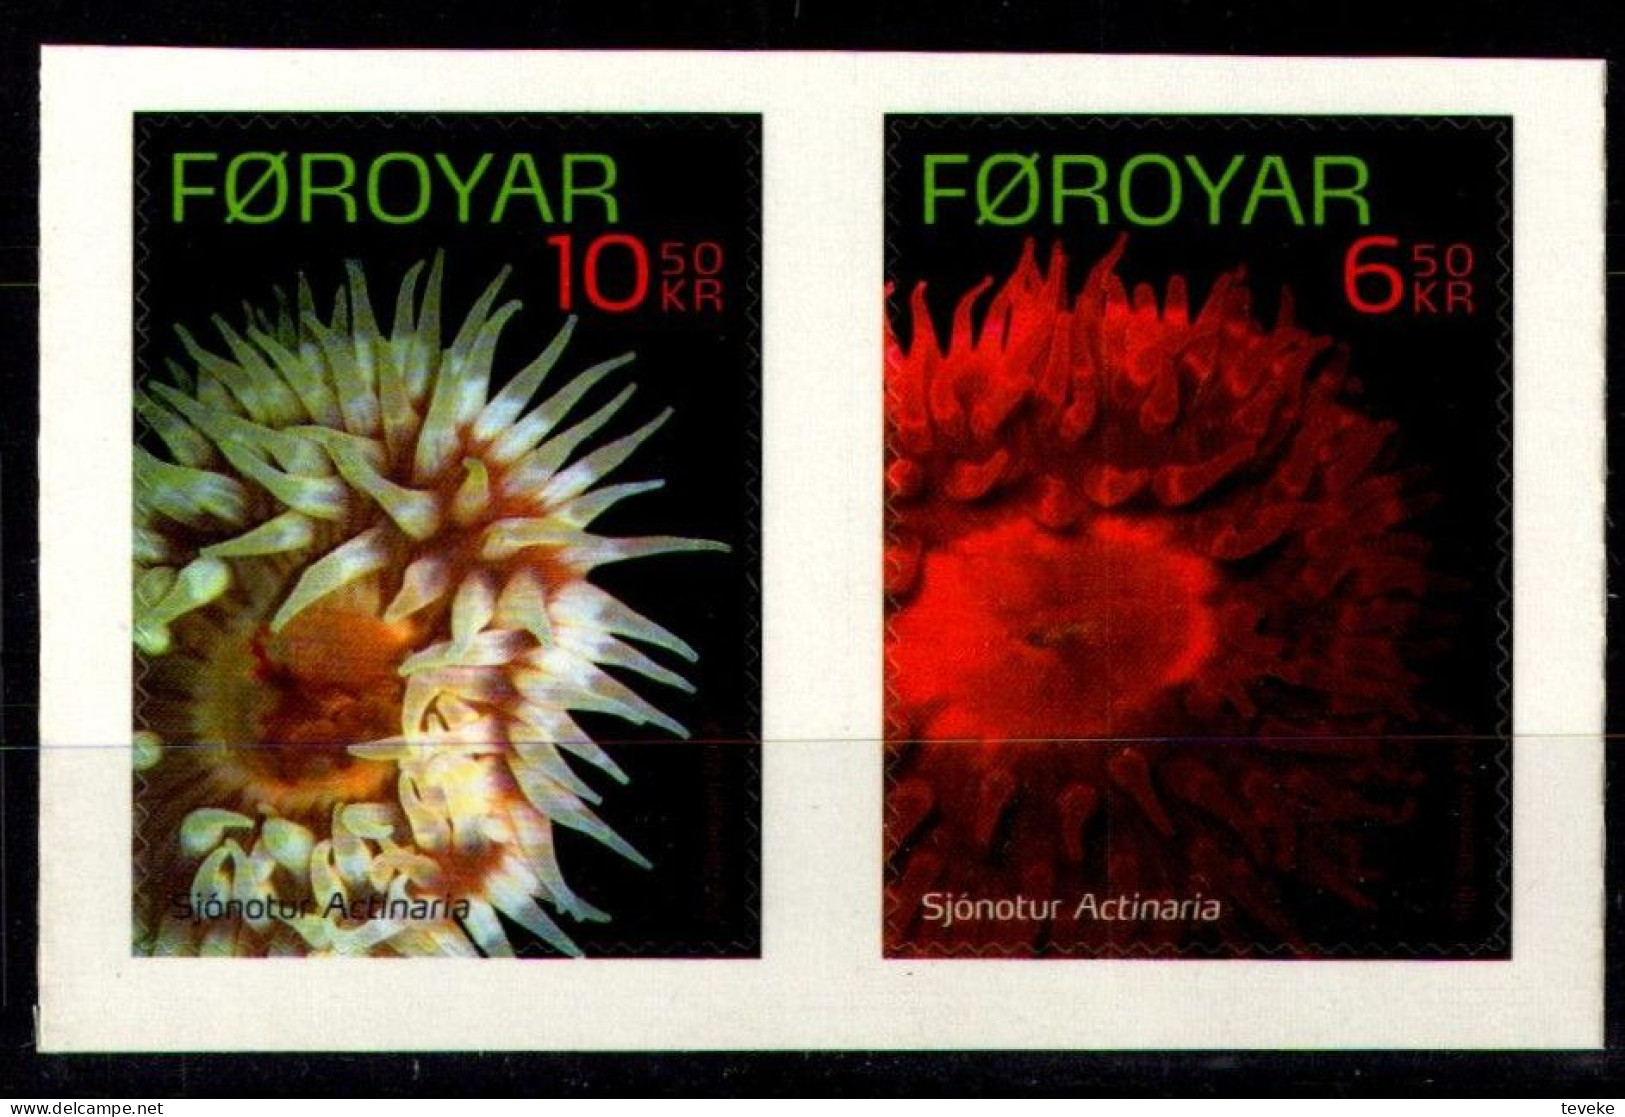 FAEROËR 2012 - MiNr. 743/744 - **/MNH - Fauna - Sea Animals: Sea Anemones - Faroe Islands